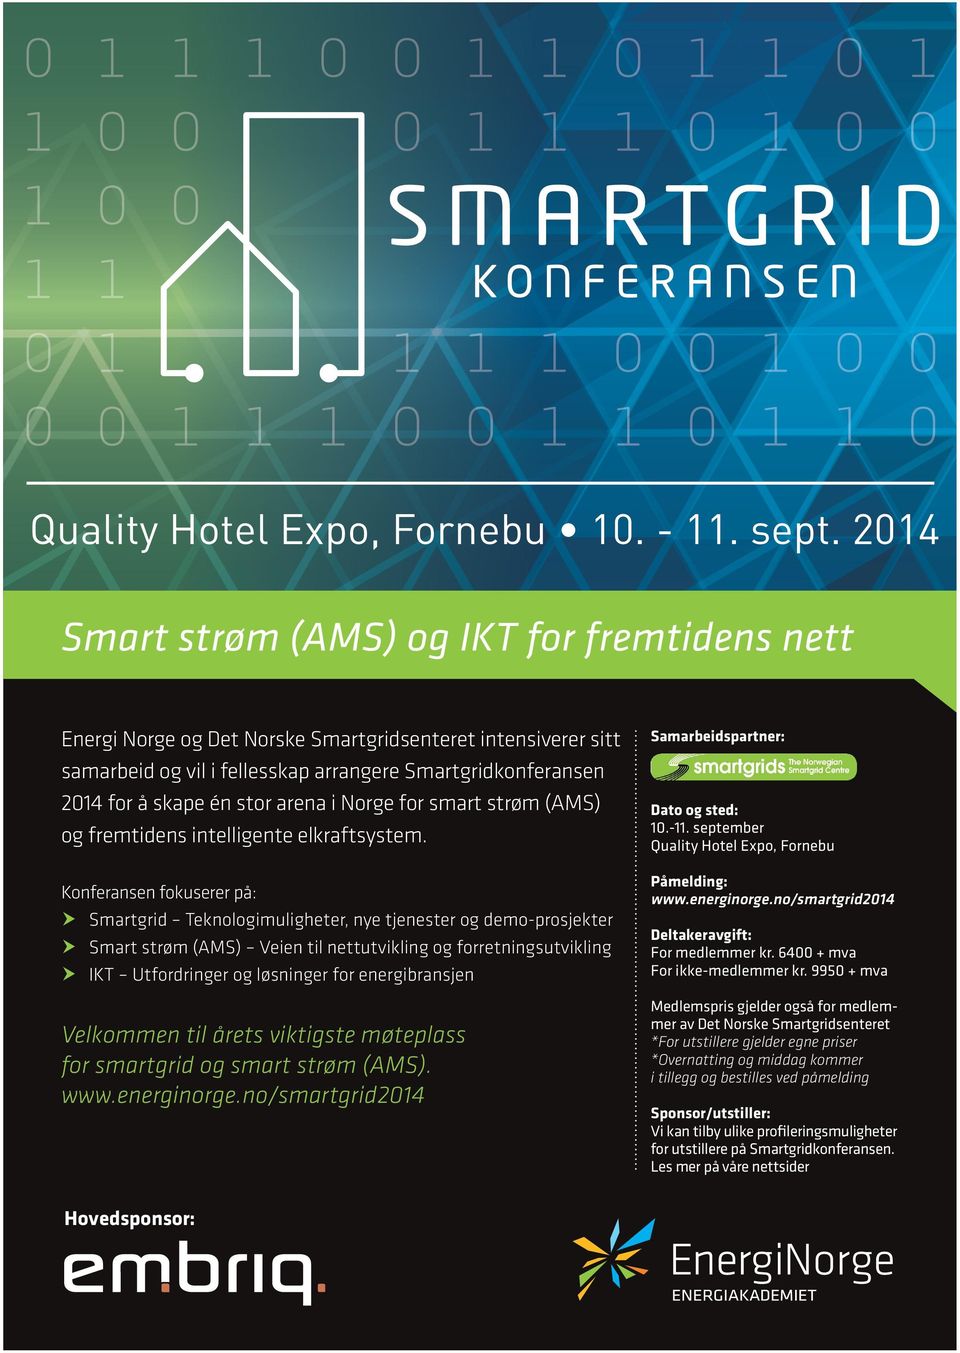 arena i Norge for smart strøm (AMS) og fremtidens intelligente elkraftsystem.